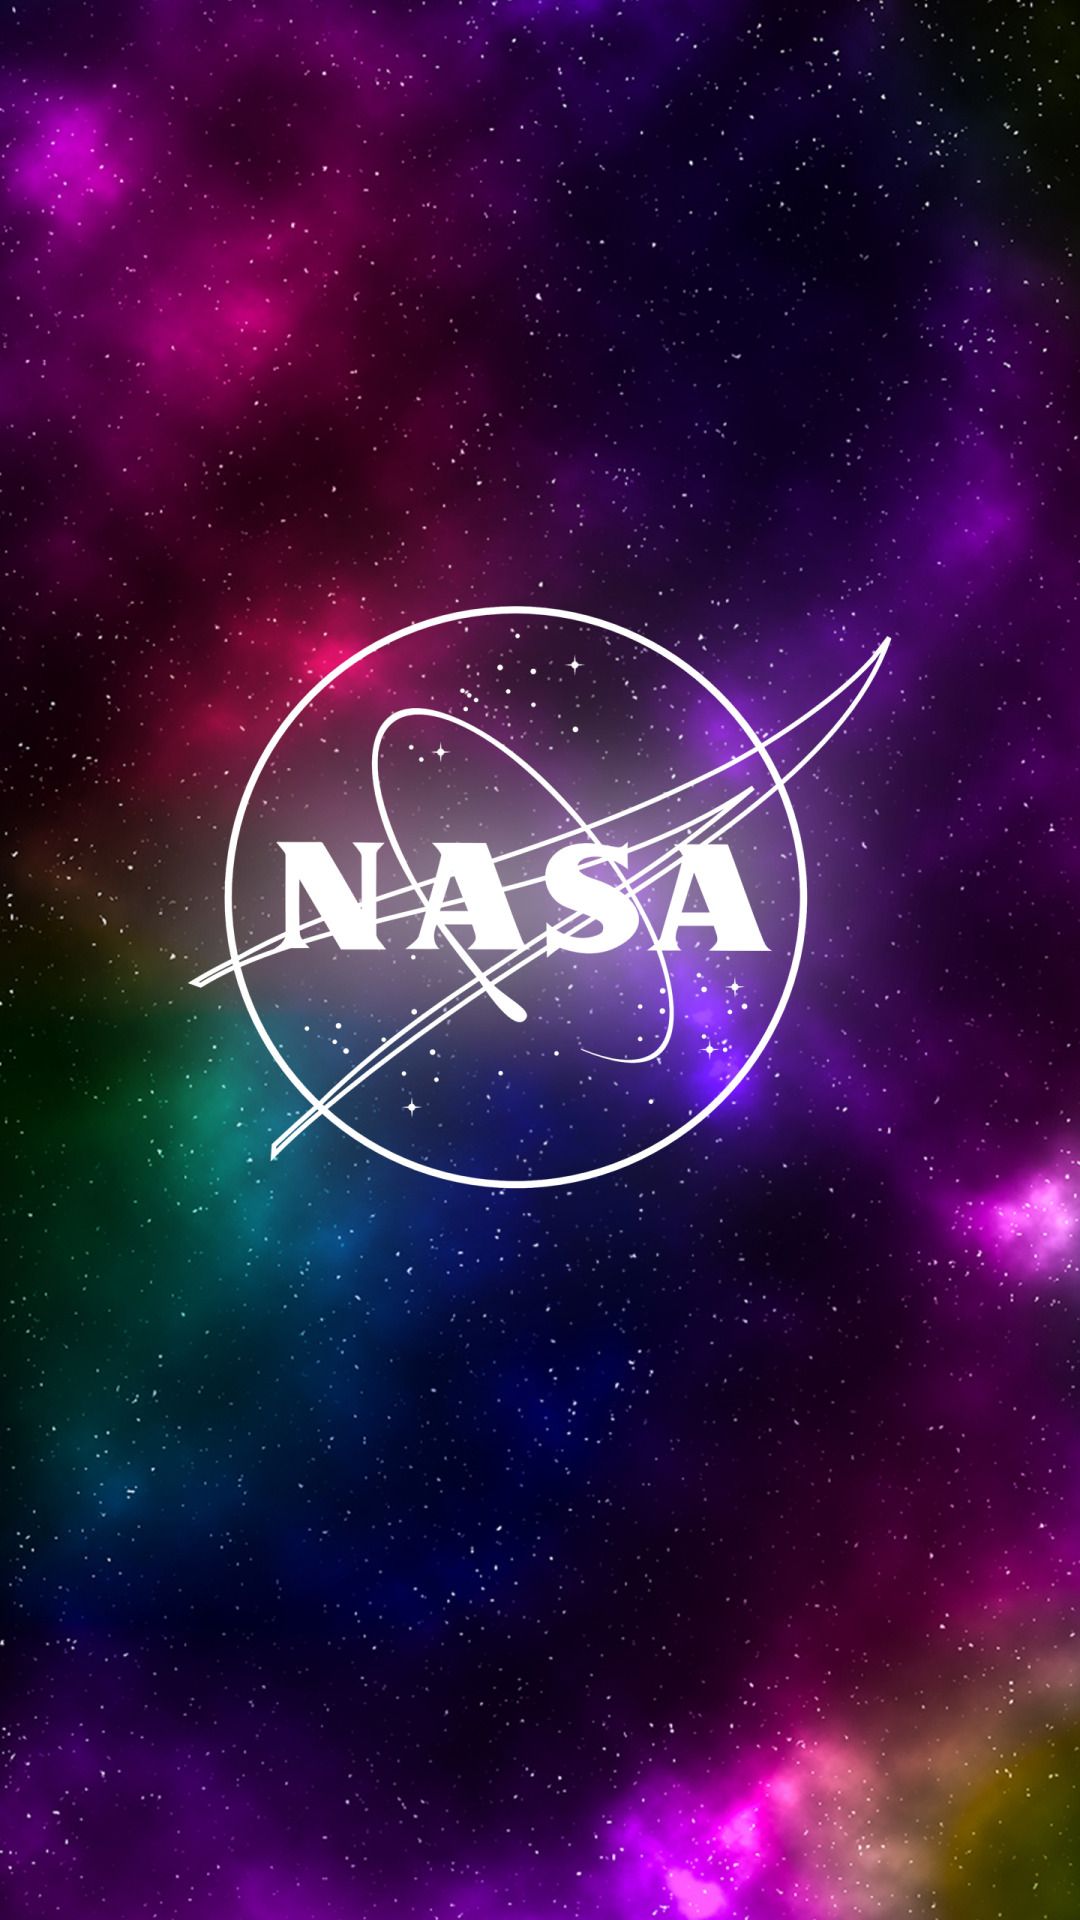 Fondos de pantalla de NASA - FondosMil